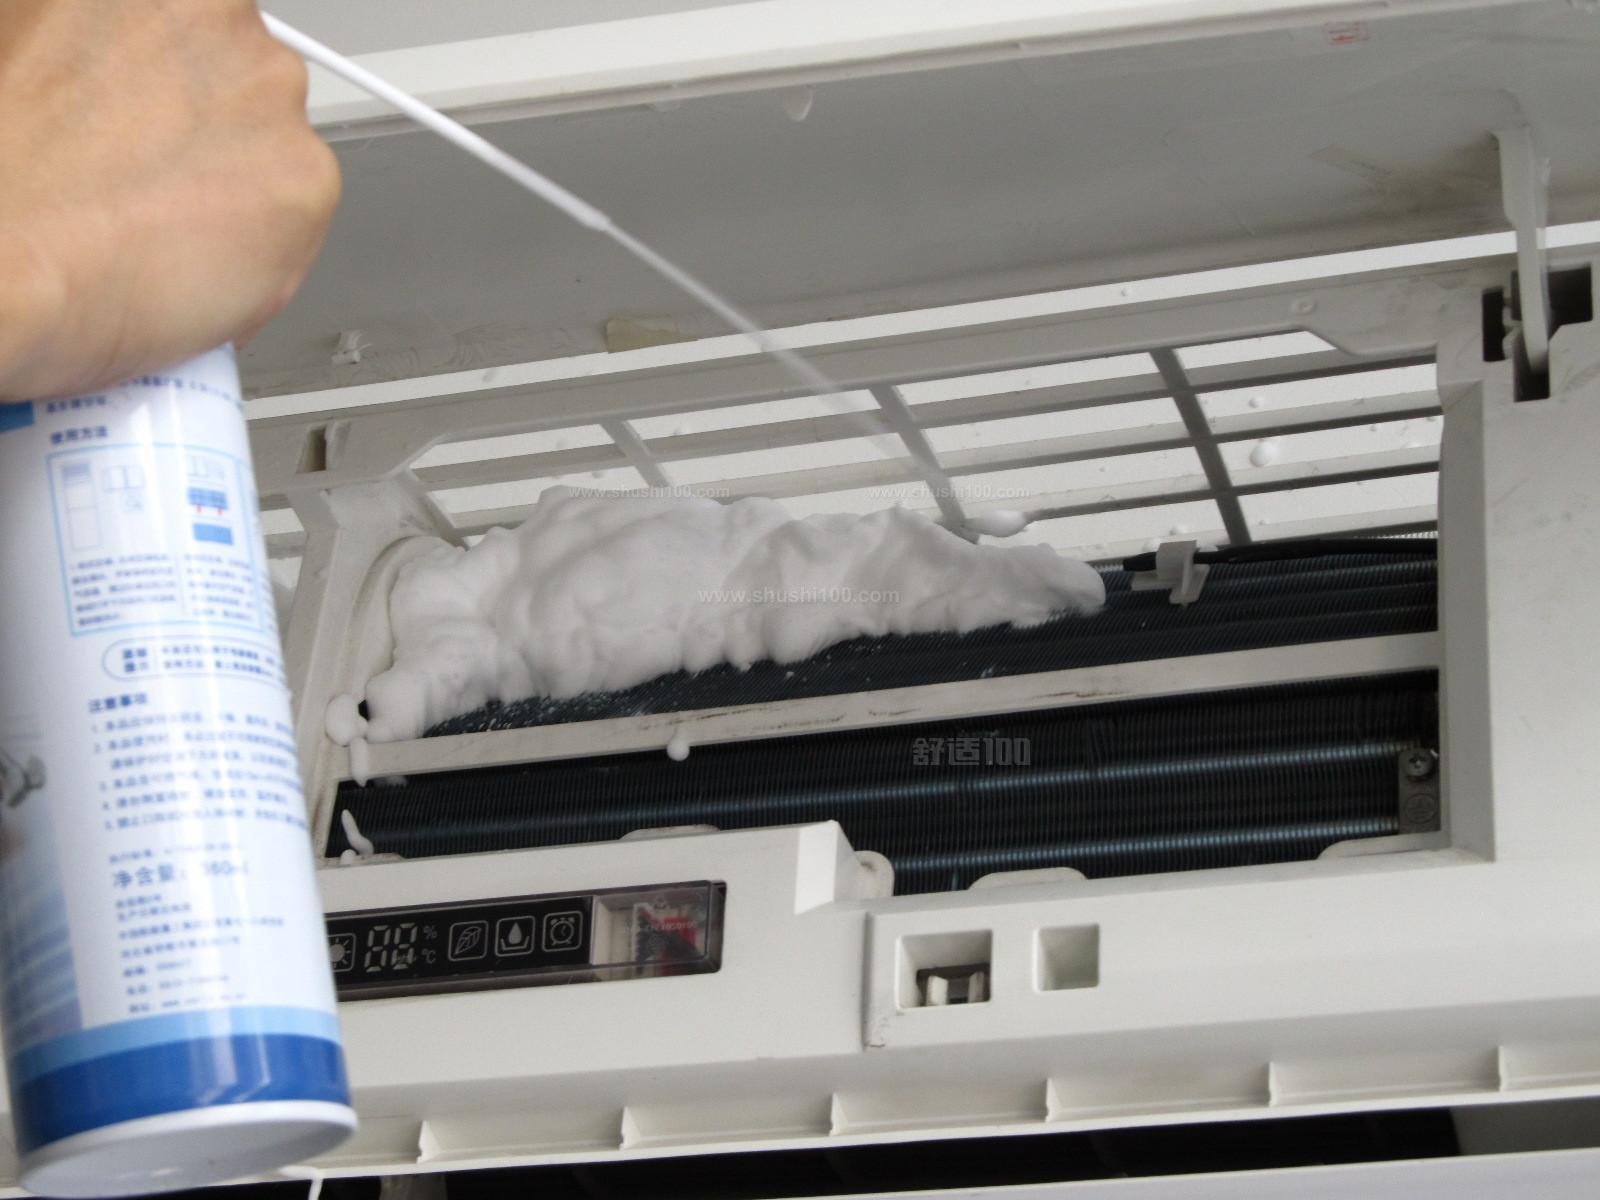 自己彻底清洗室内机空调图解 空调正确清洗保养的方法教程